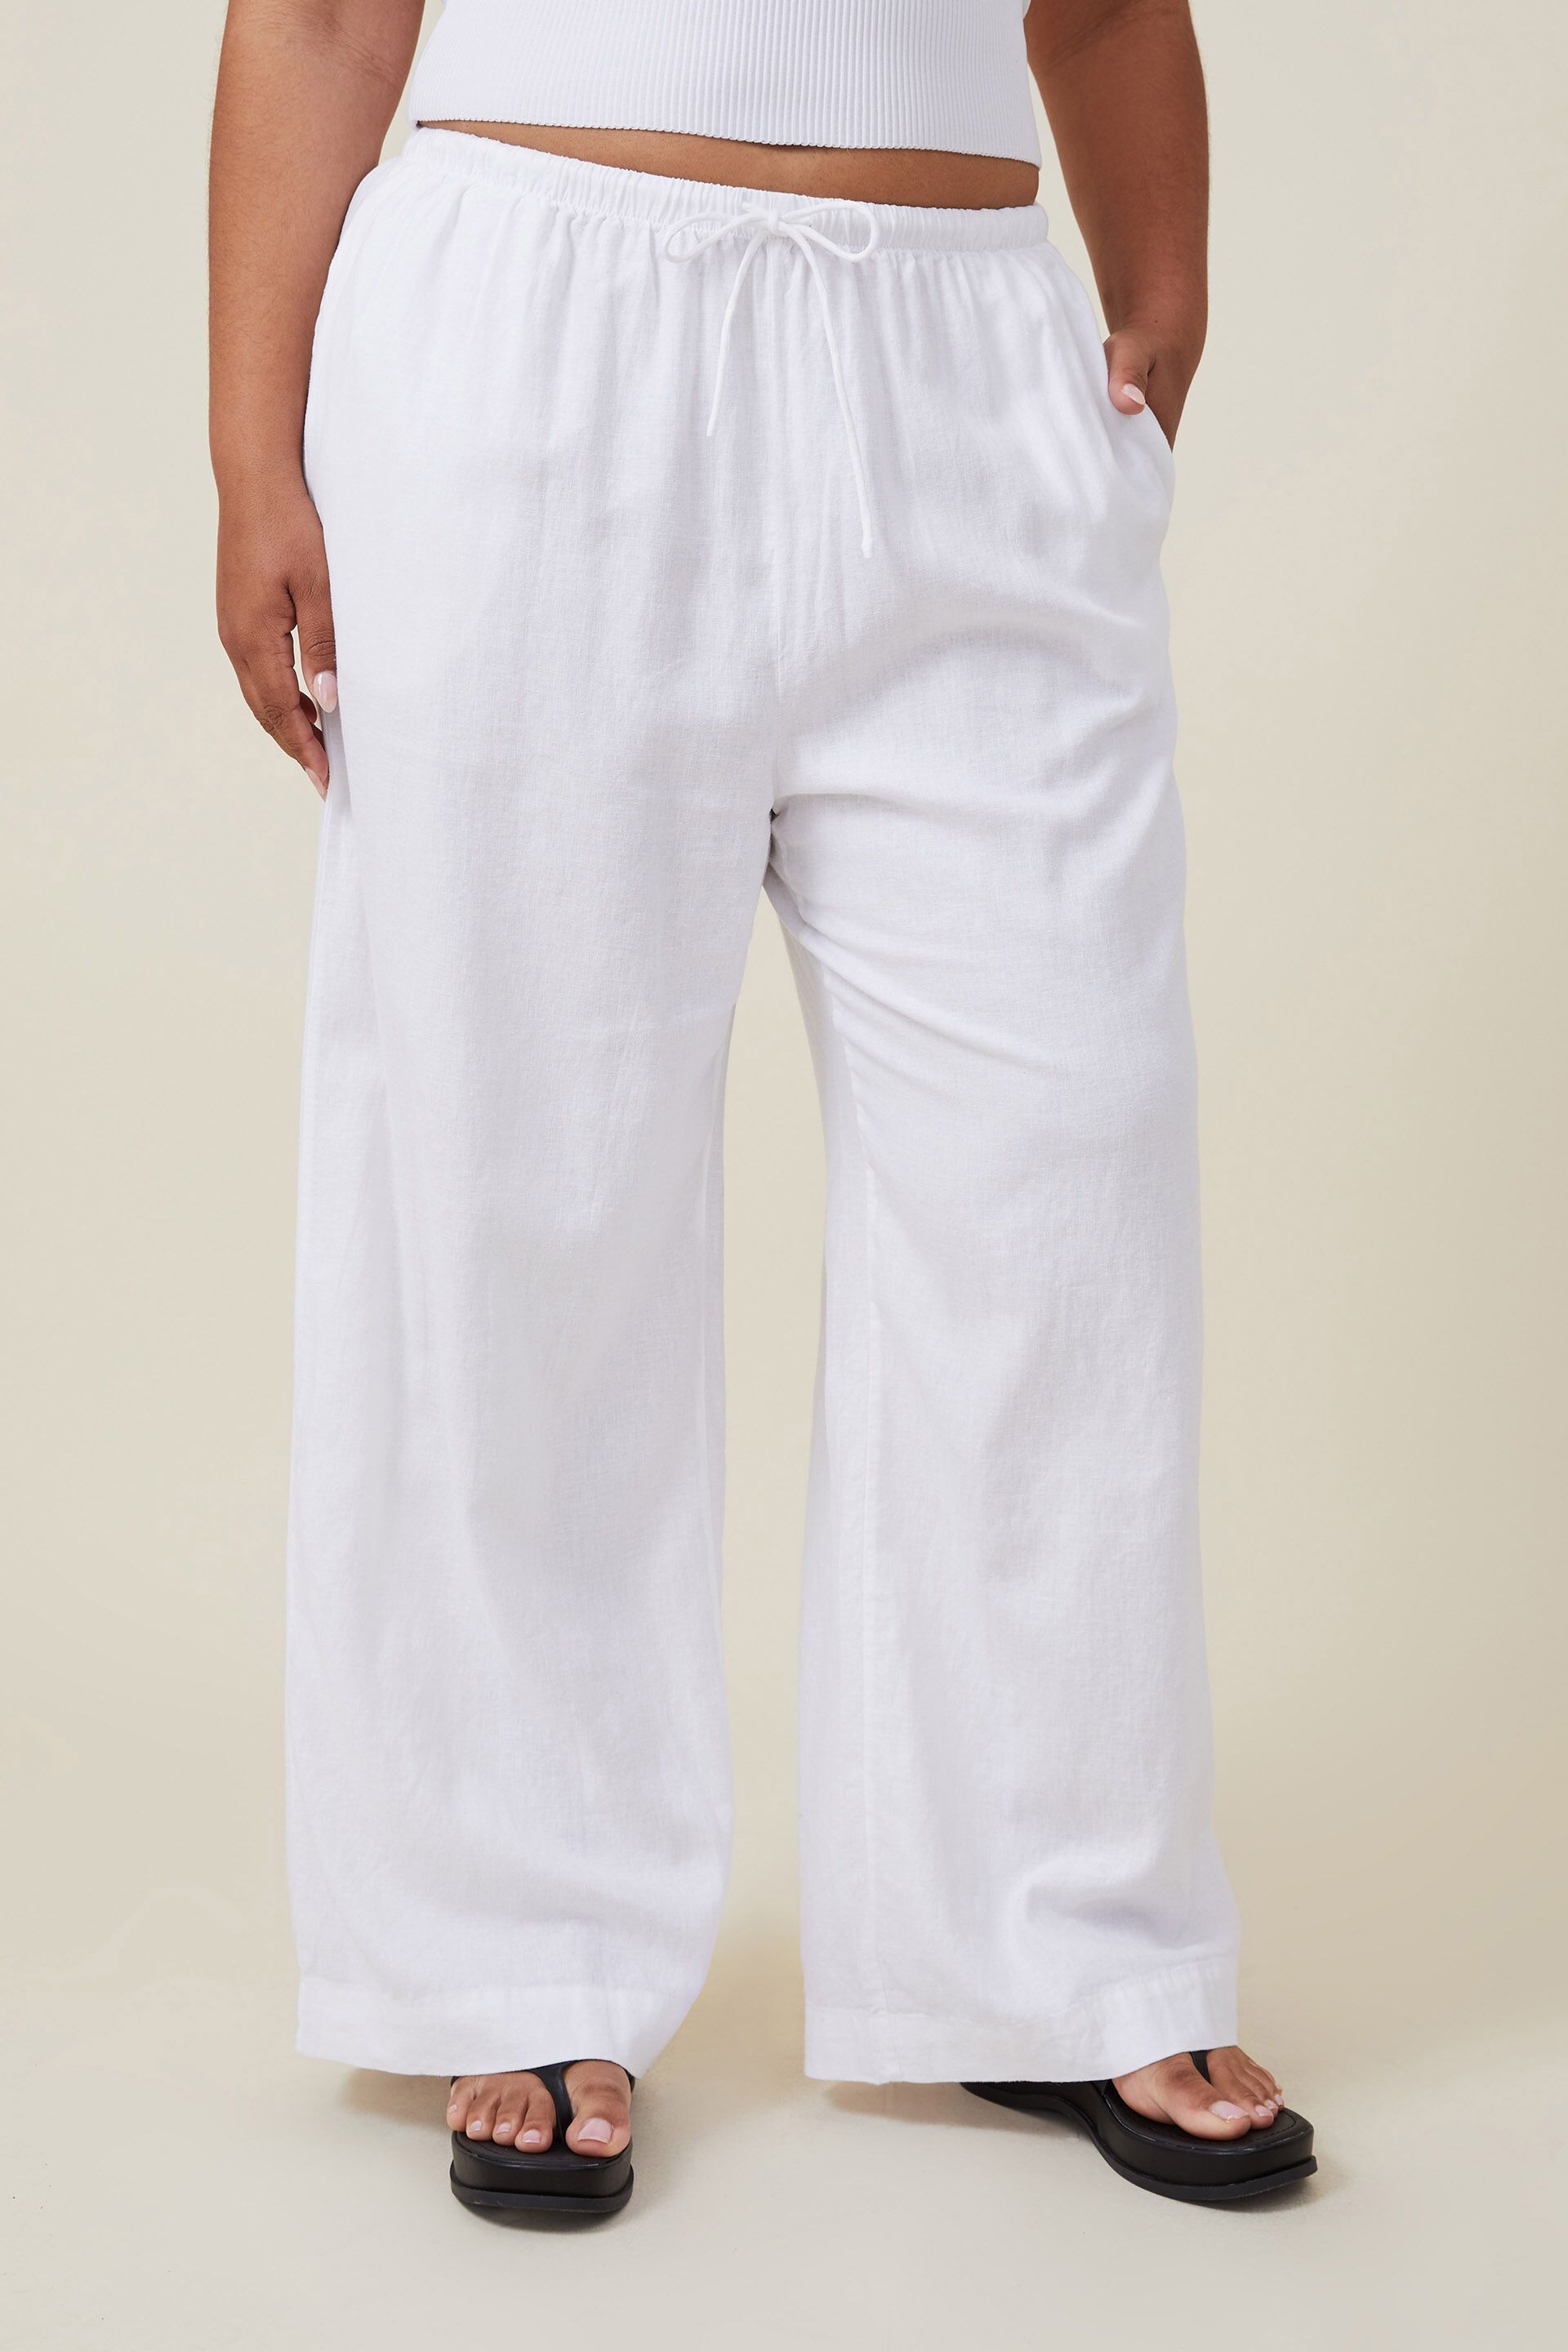 White Cotton Pants – Jaipuriya